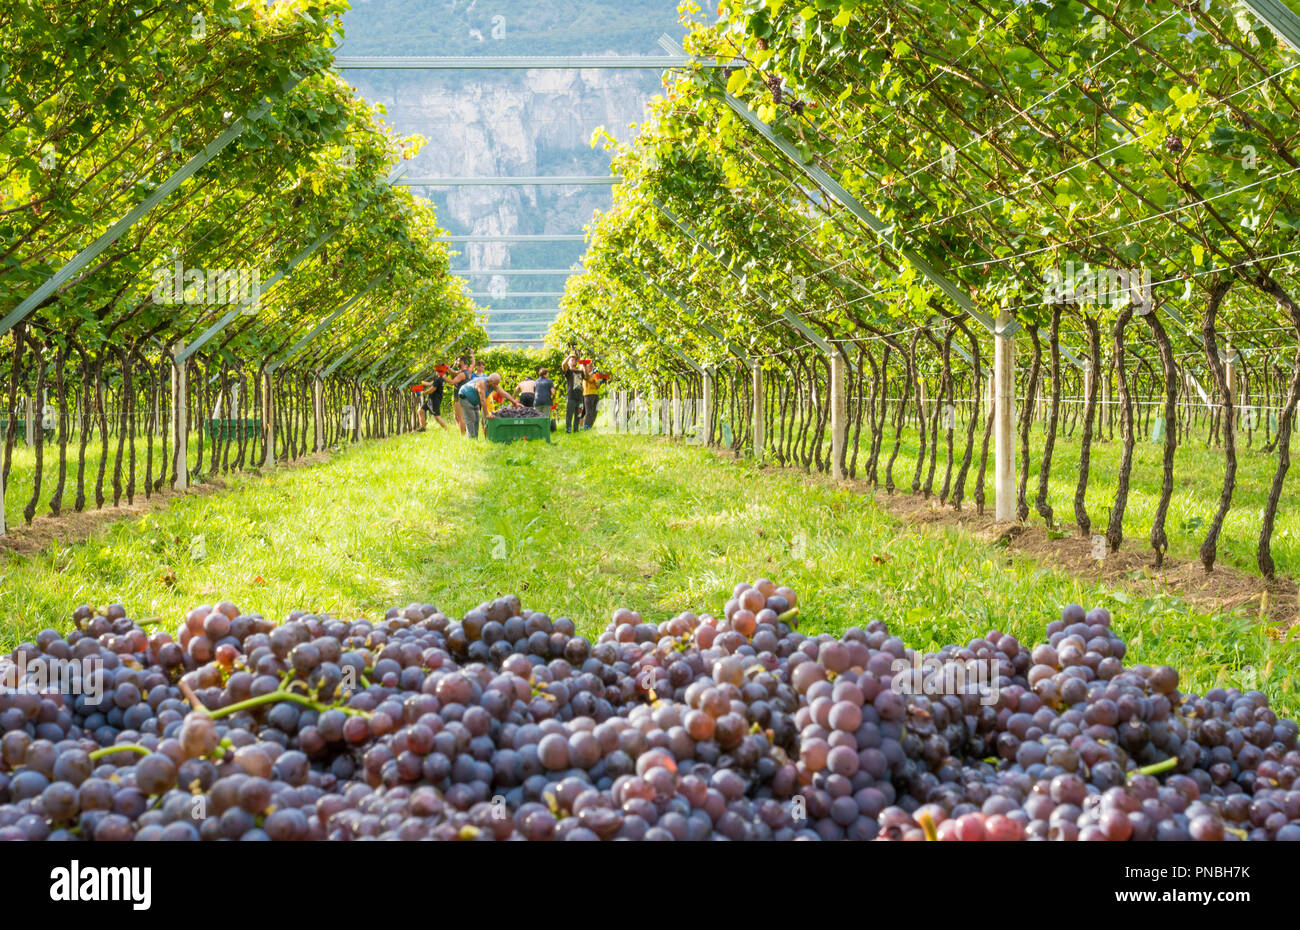 Grappes de raisins mûrs ( variété Pinot grigio) pendant les vendanges dans le vignoble du Tyrol du Sud en Italie du nord Banque D'Images